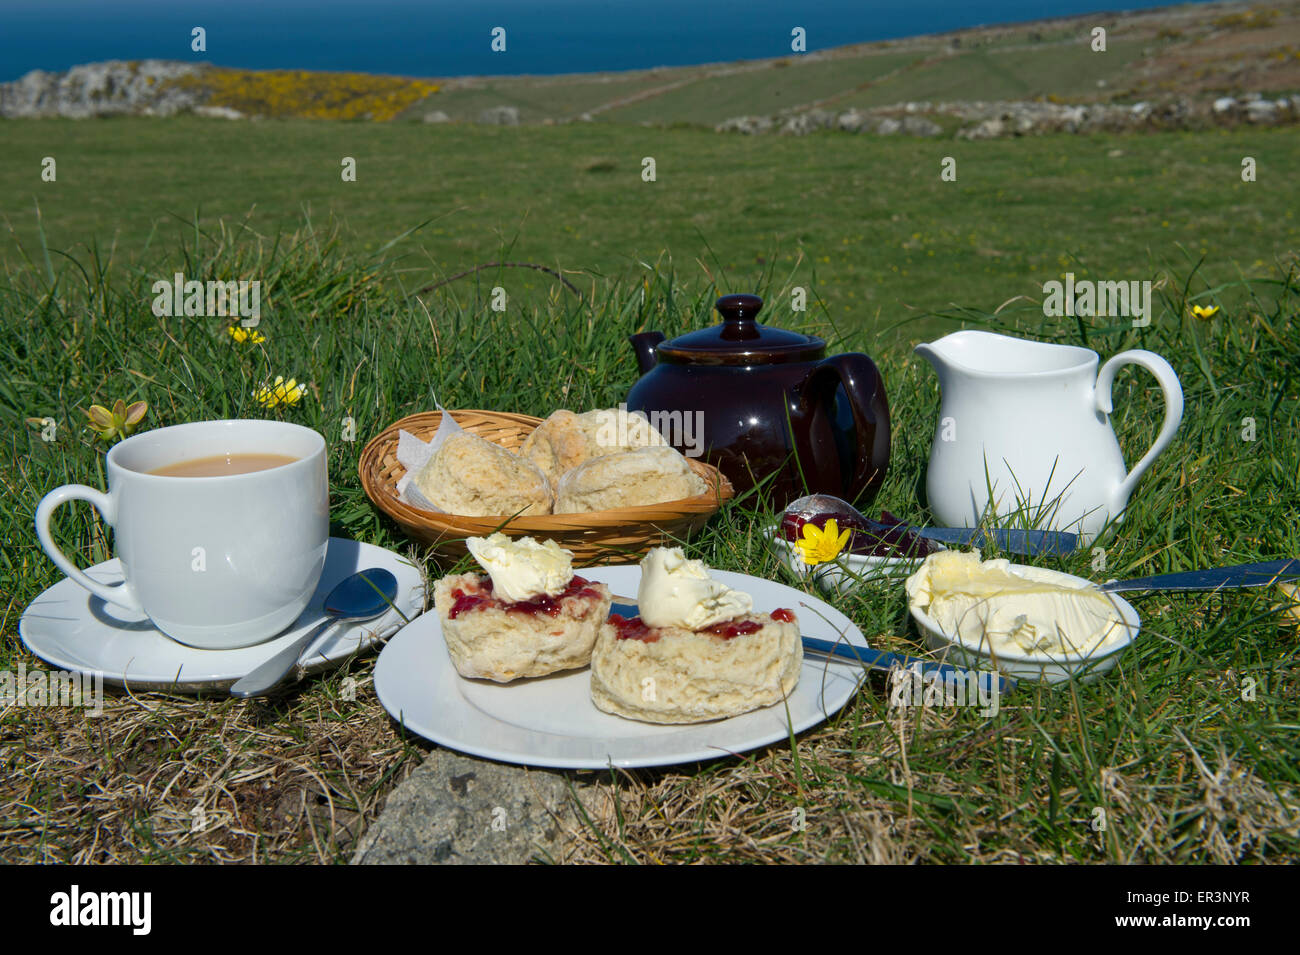 Traditionellen kornischen Sahne Tee mit Scones, kornische Gegeronnene Creme, Marmelade und tea.a UK Cornwall Essen Tee Essen Ofen backen Backen Stockfoto